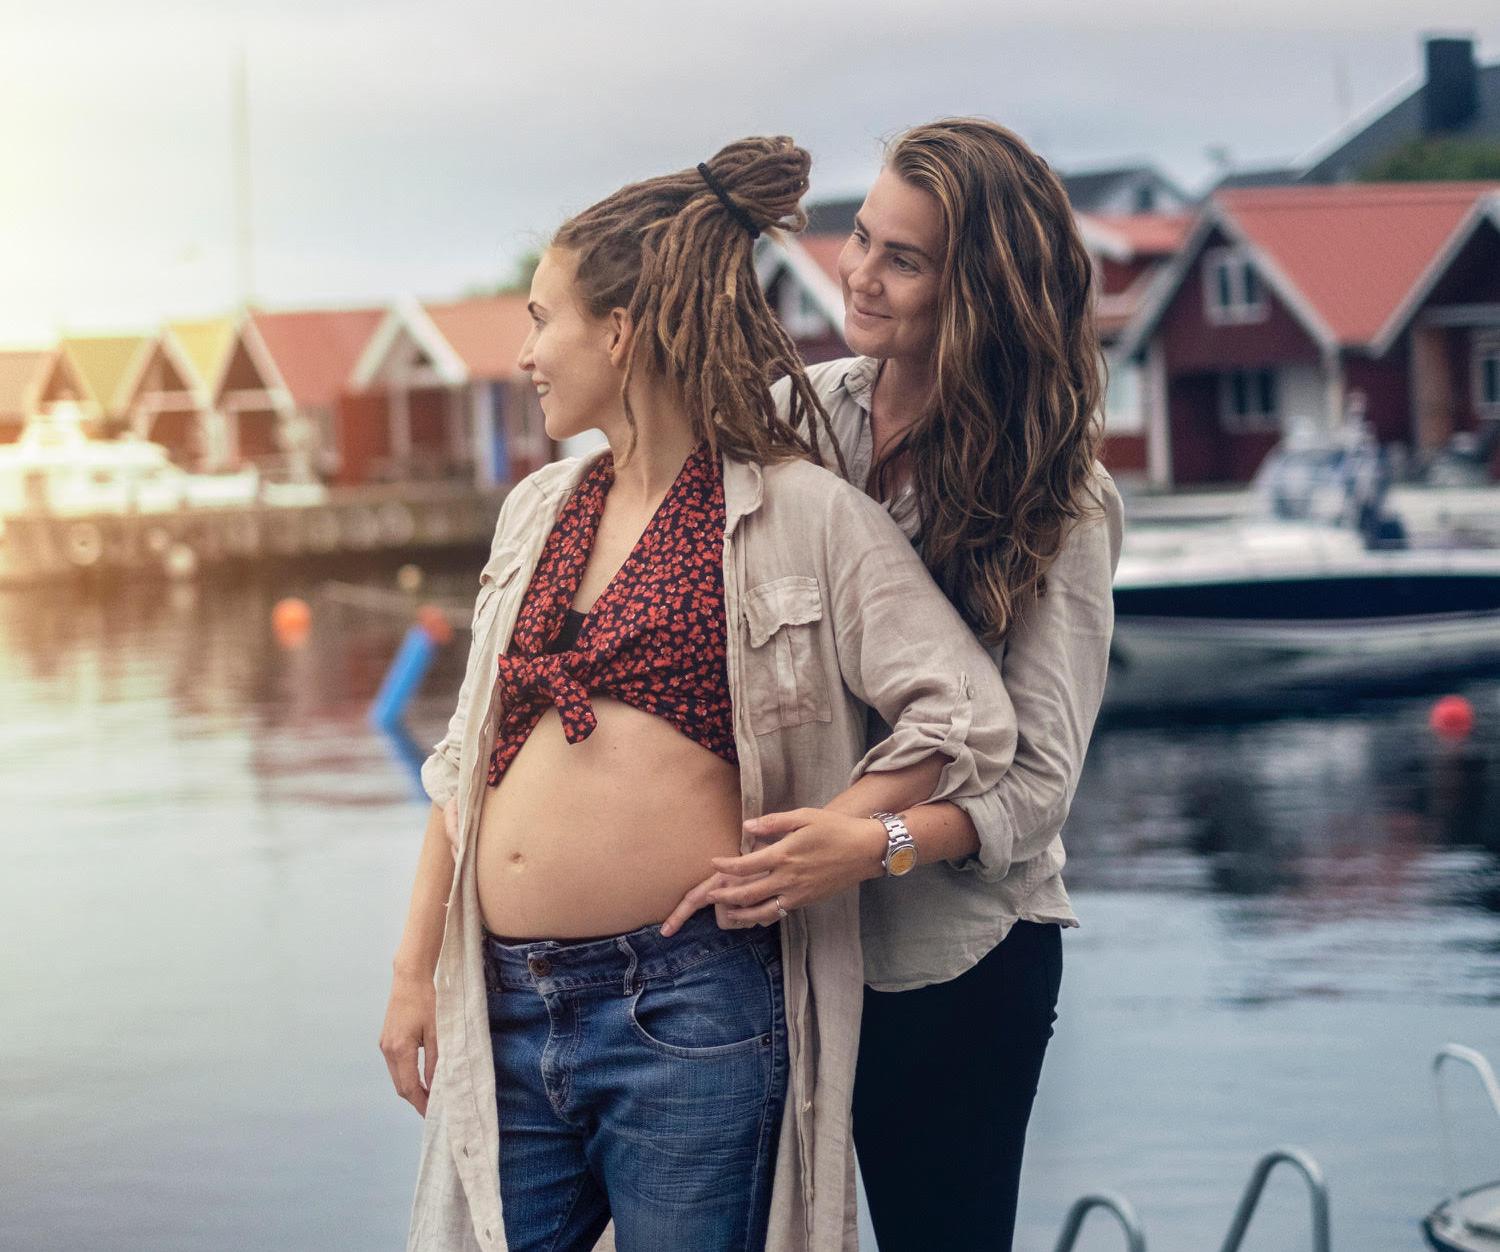 Mariette och fästmön Isabelle Grönqvist väntar barn med hjälp av IVF. Nu vädjar de om att fler människor ska överväga donationer för att kunna hjälpa.